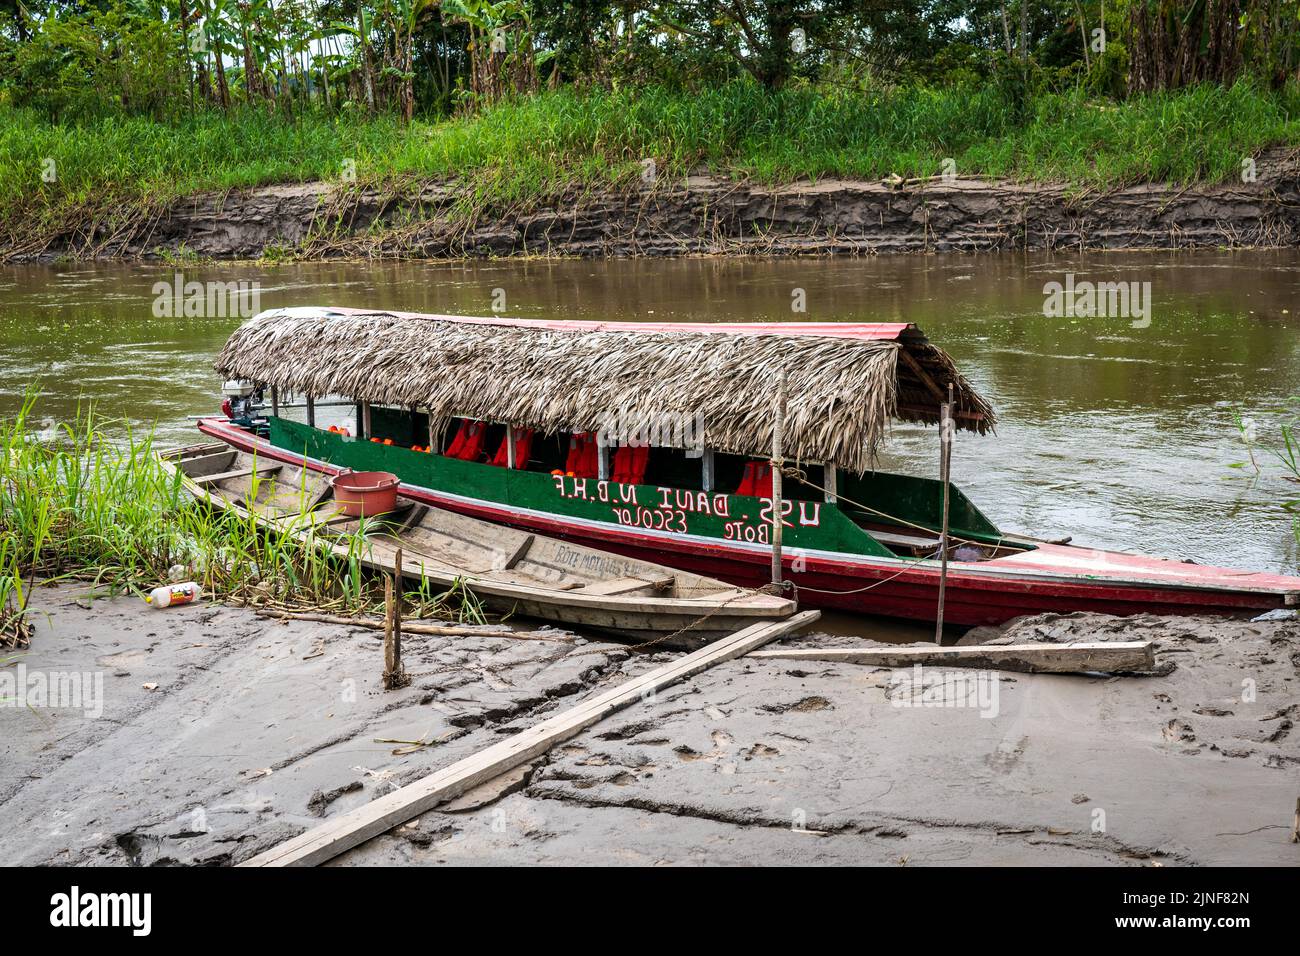 Les États-Unis Dani sert de bateau de transport scolaire pour les riberenos dans la région d'Ayacucho de l'Amazonie péruvienne Banque D'Images